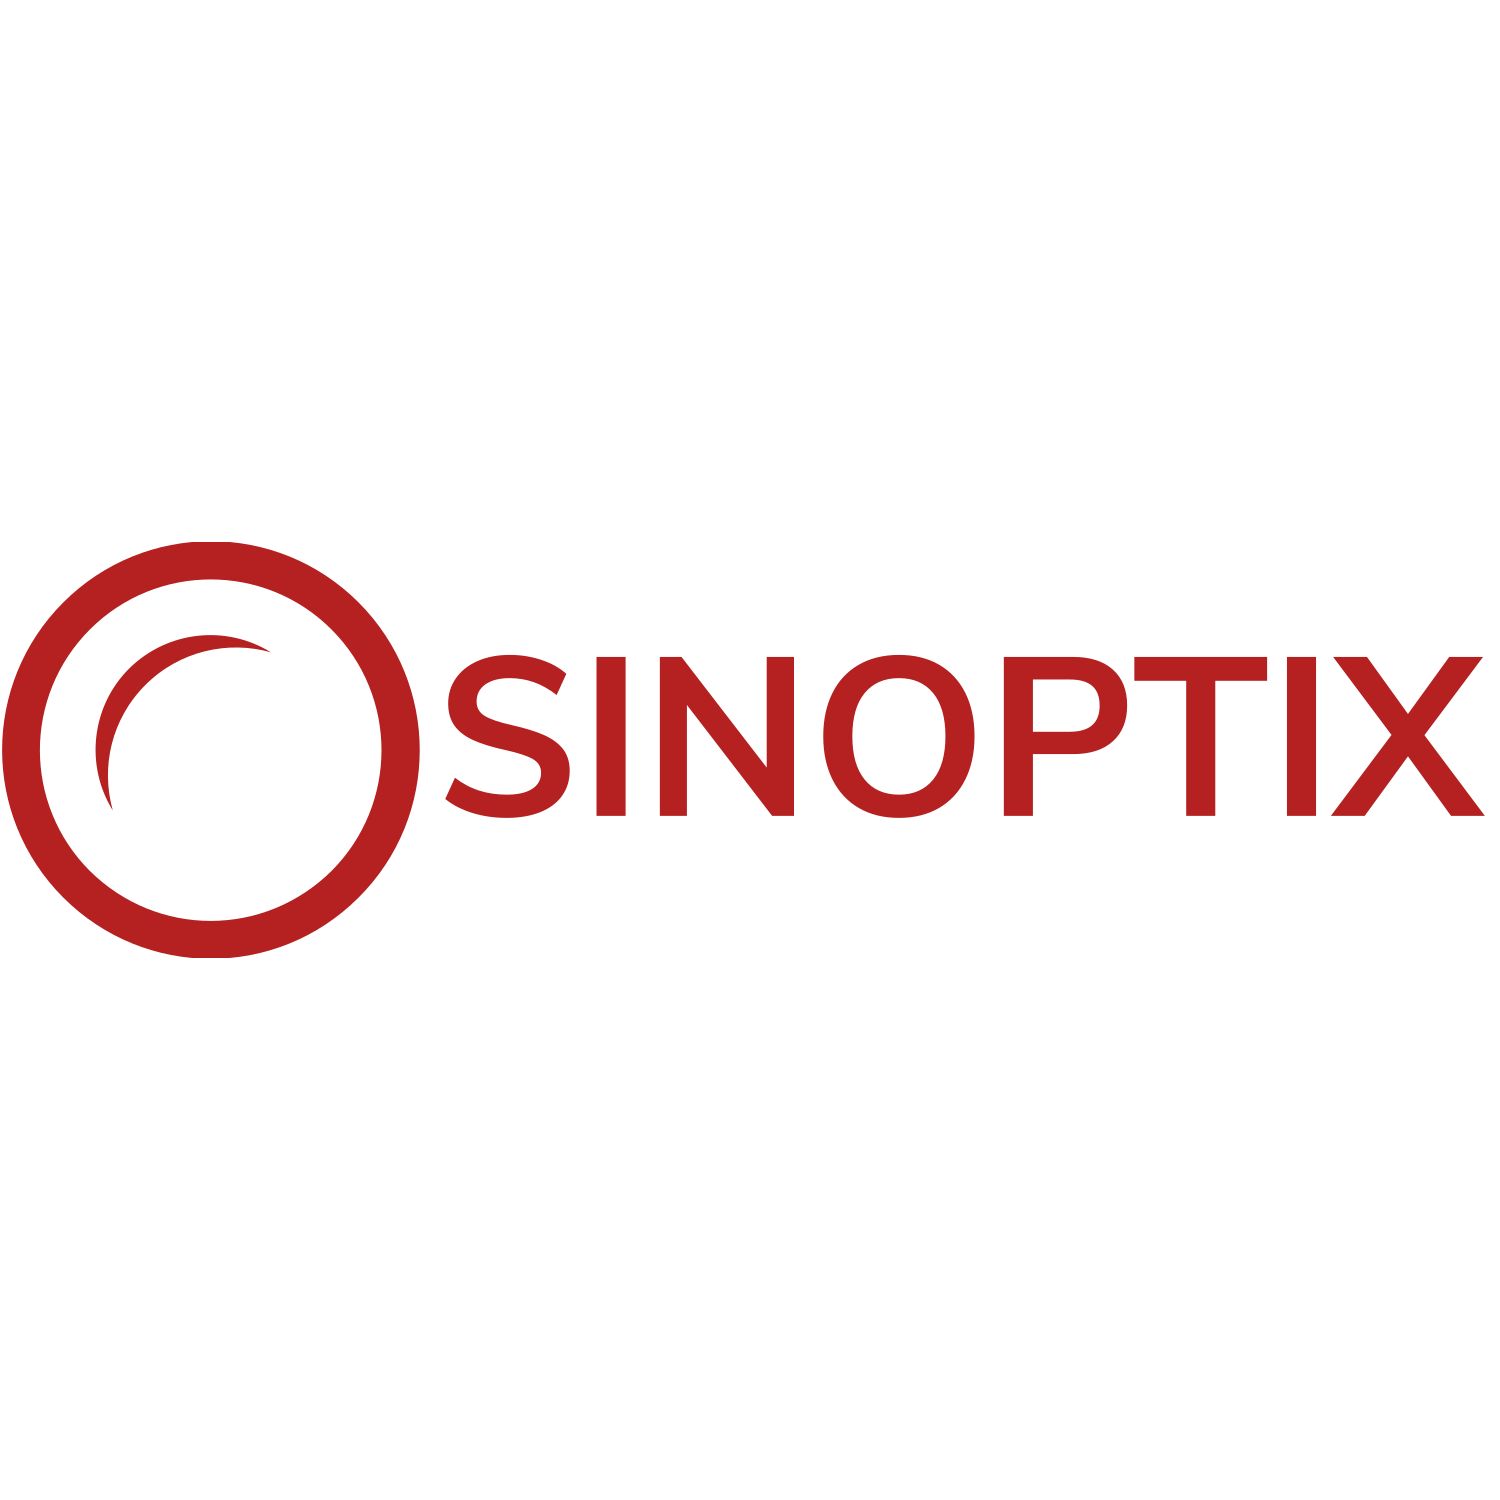 SINOPTIX logo